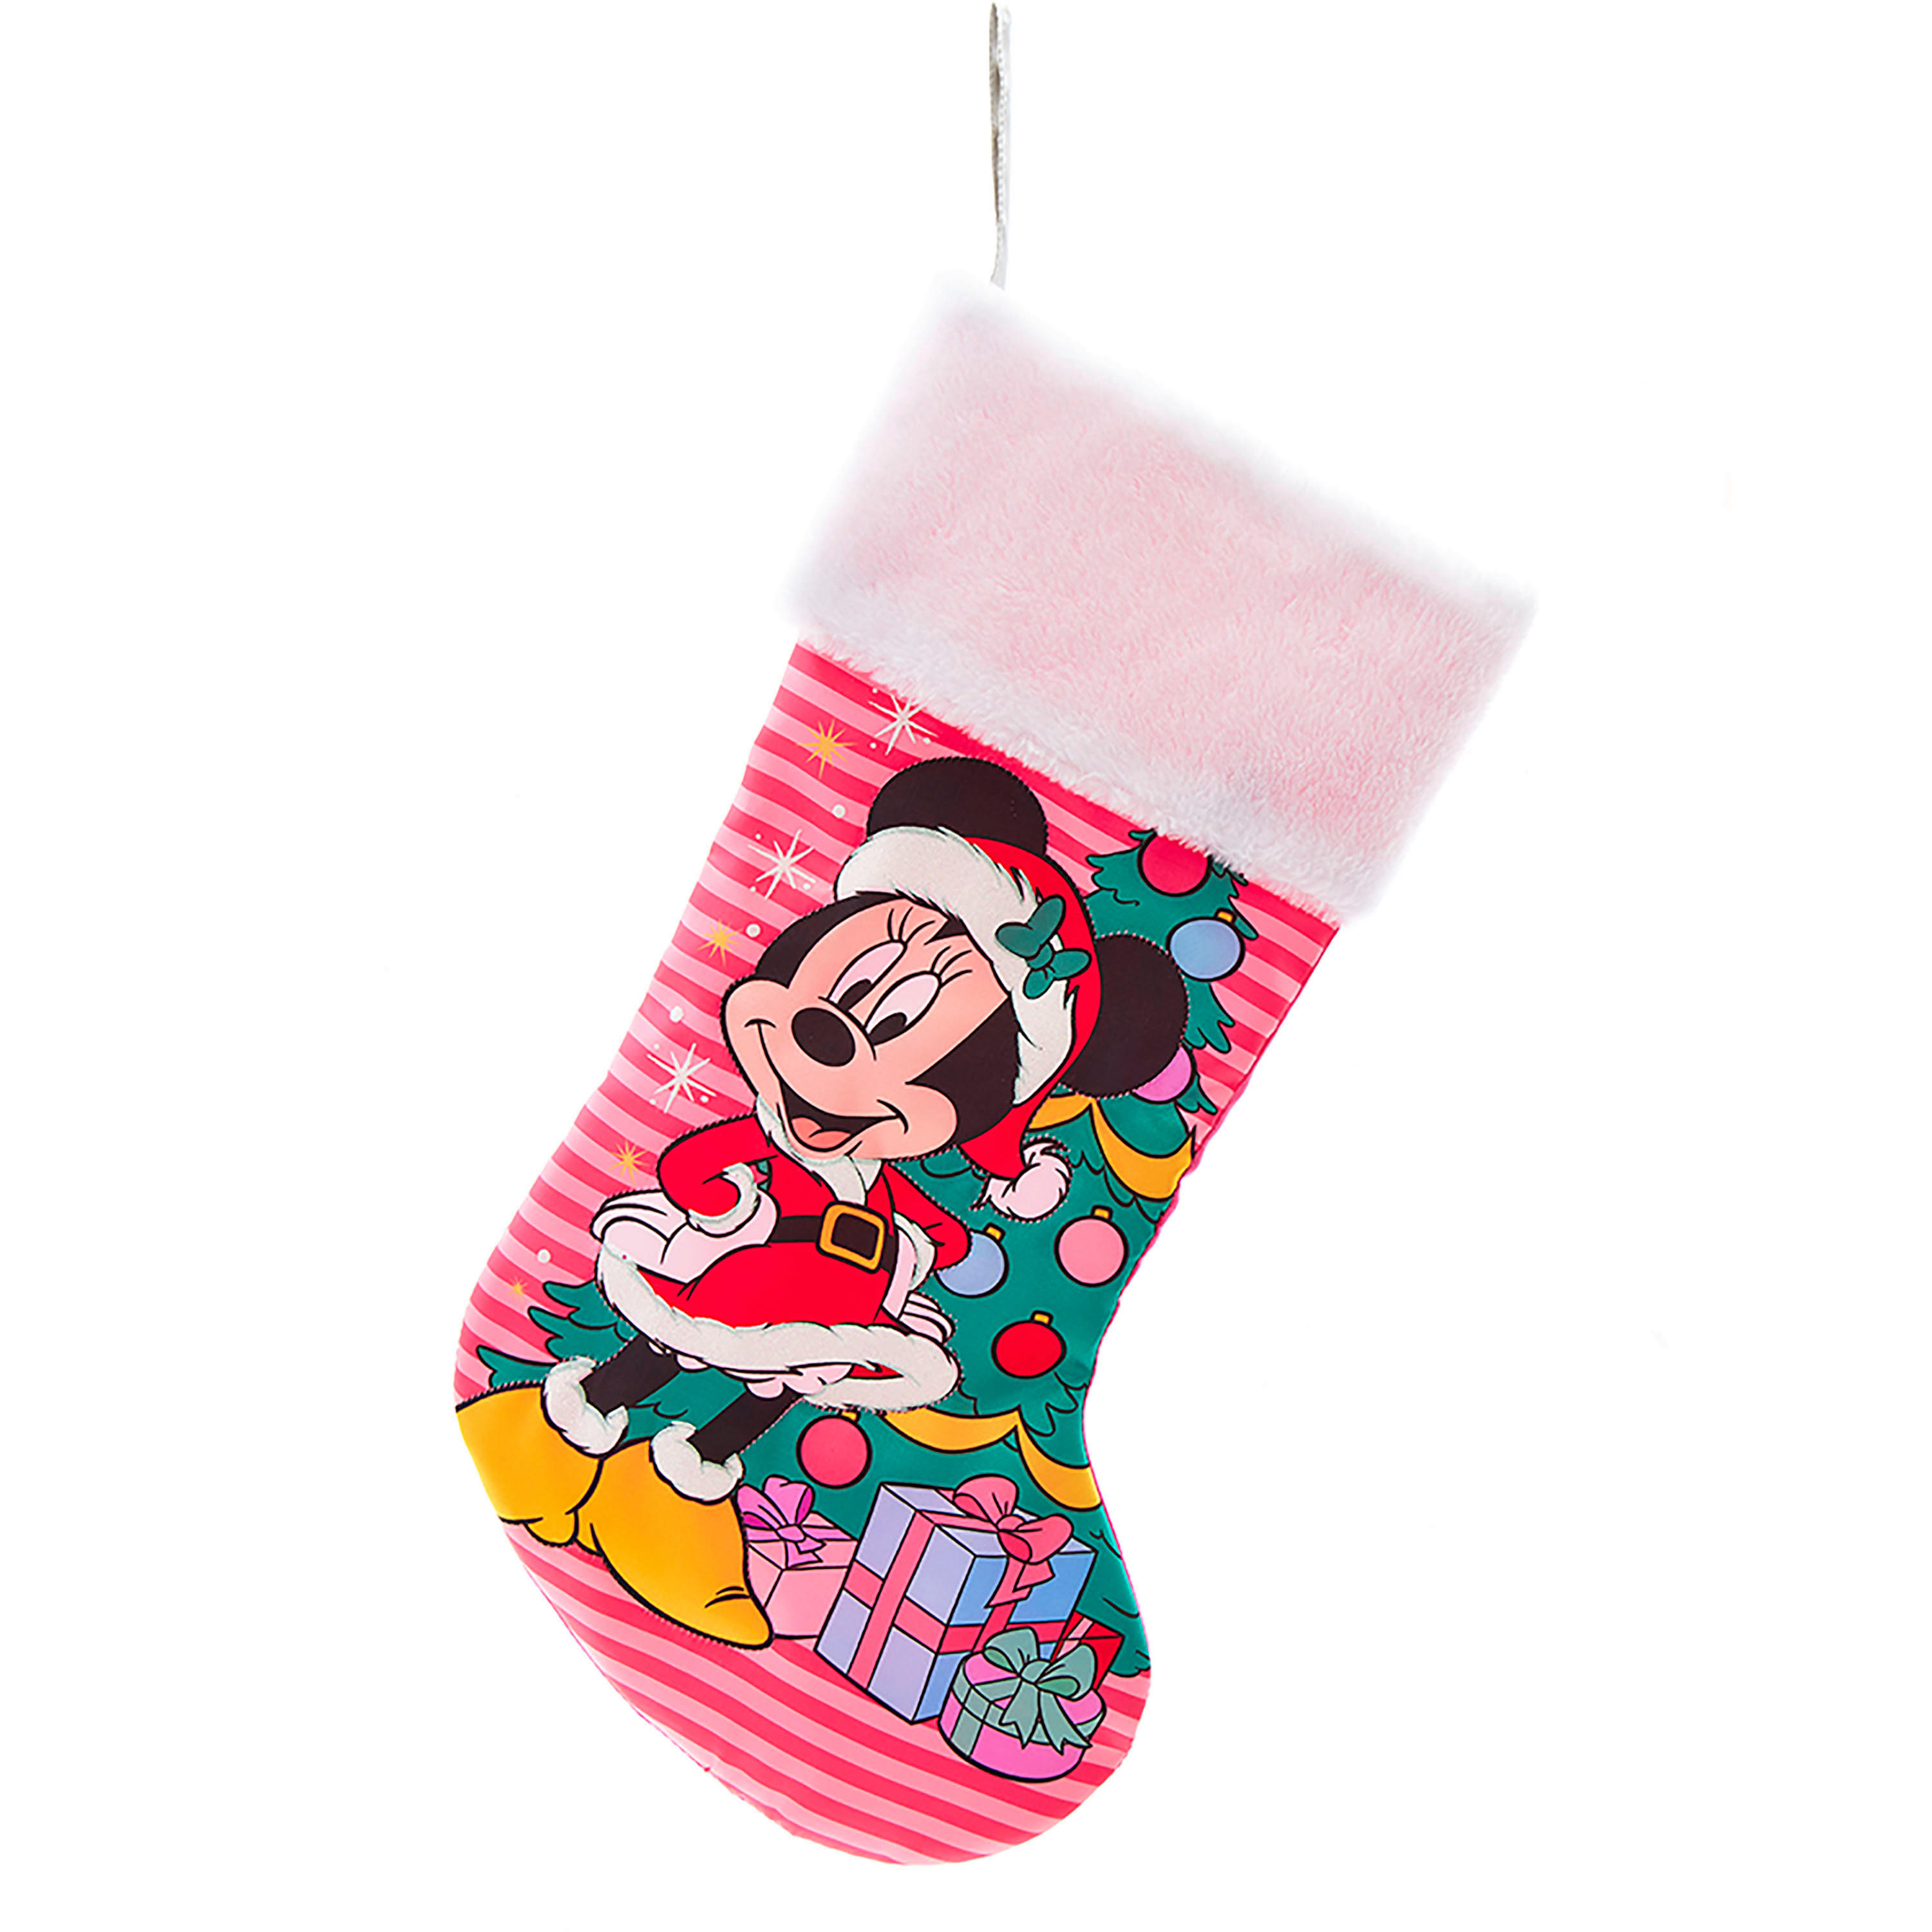 Weihnachtsstrumpf MICKEY&MINNIE Rot, Weiß  - Rot/Weiß, LIFESTYLE, Textil (15/48/5cm) - Disney